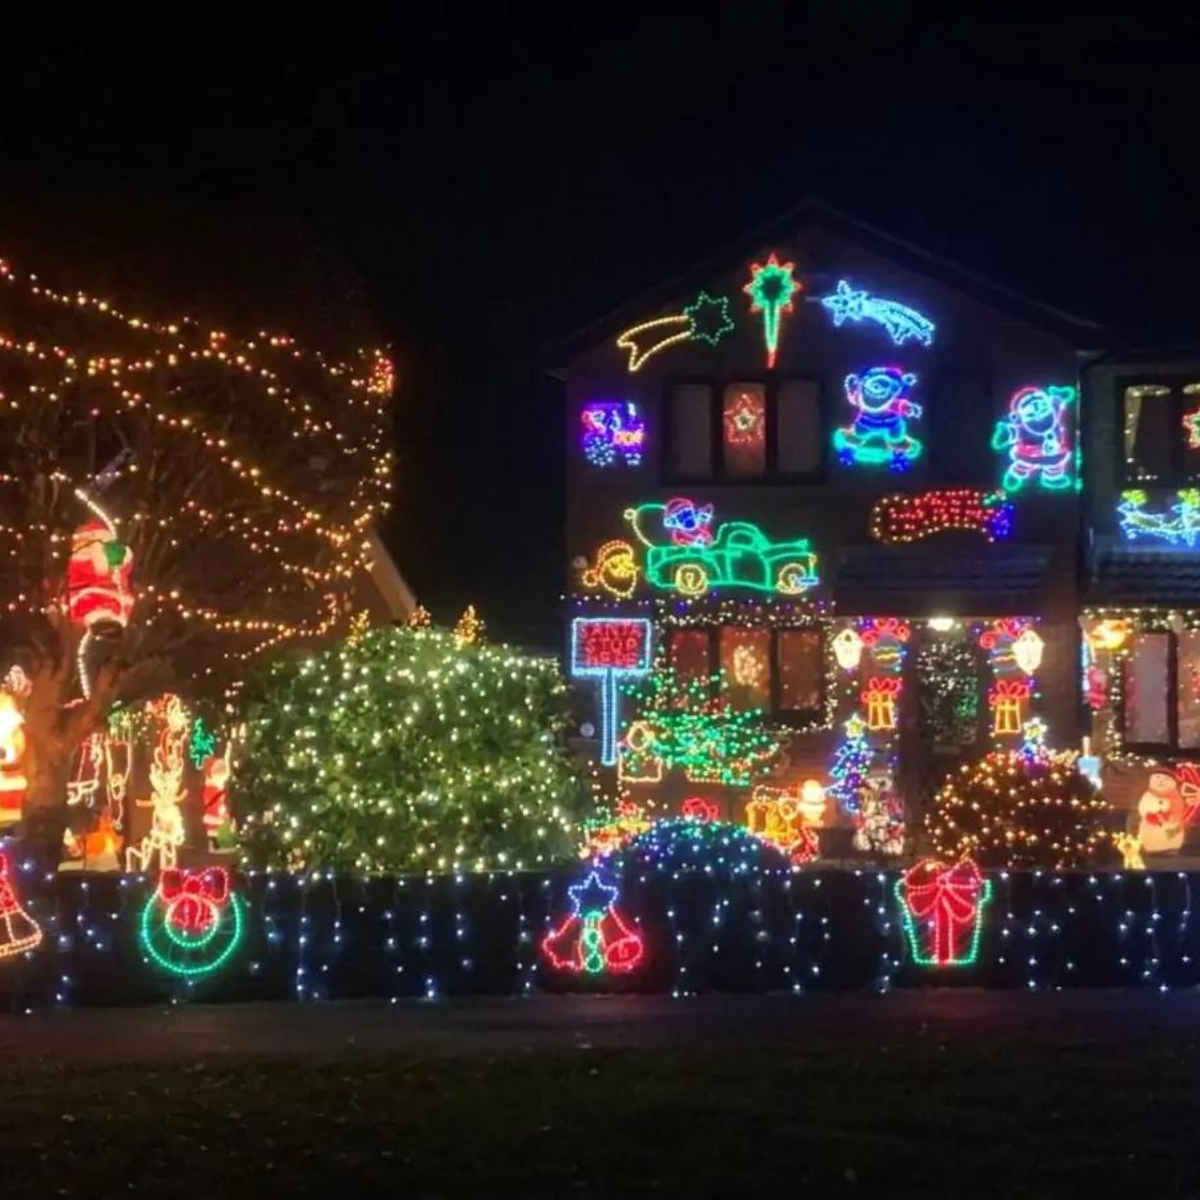 Christmas light display on a home